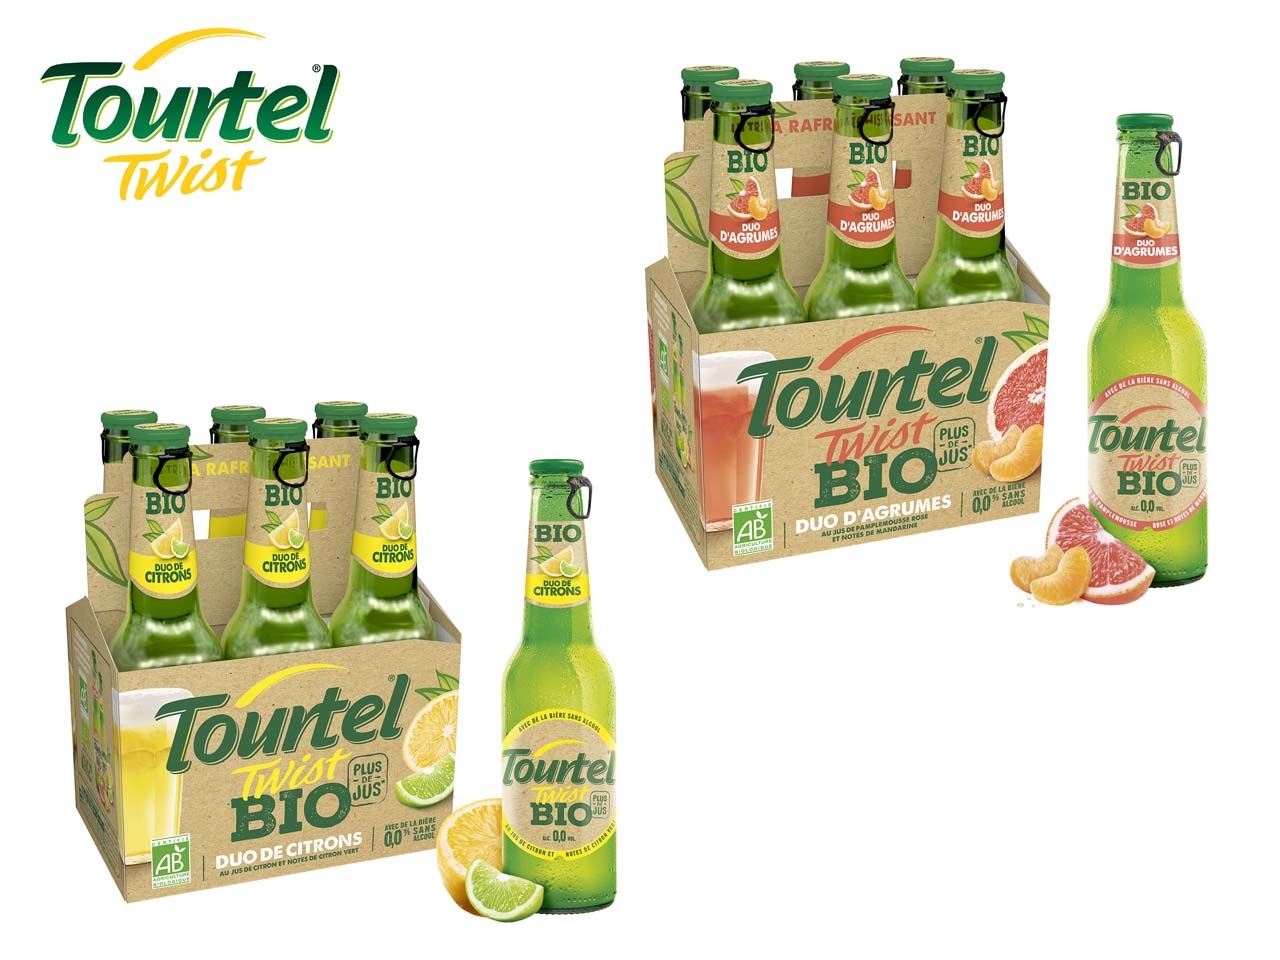 Tourtel dévoile sa 3ème gamme inédite, Tourtel Twist Bio Plus de Jus !